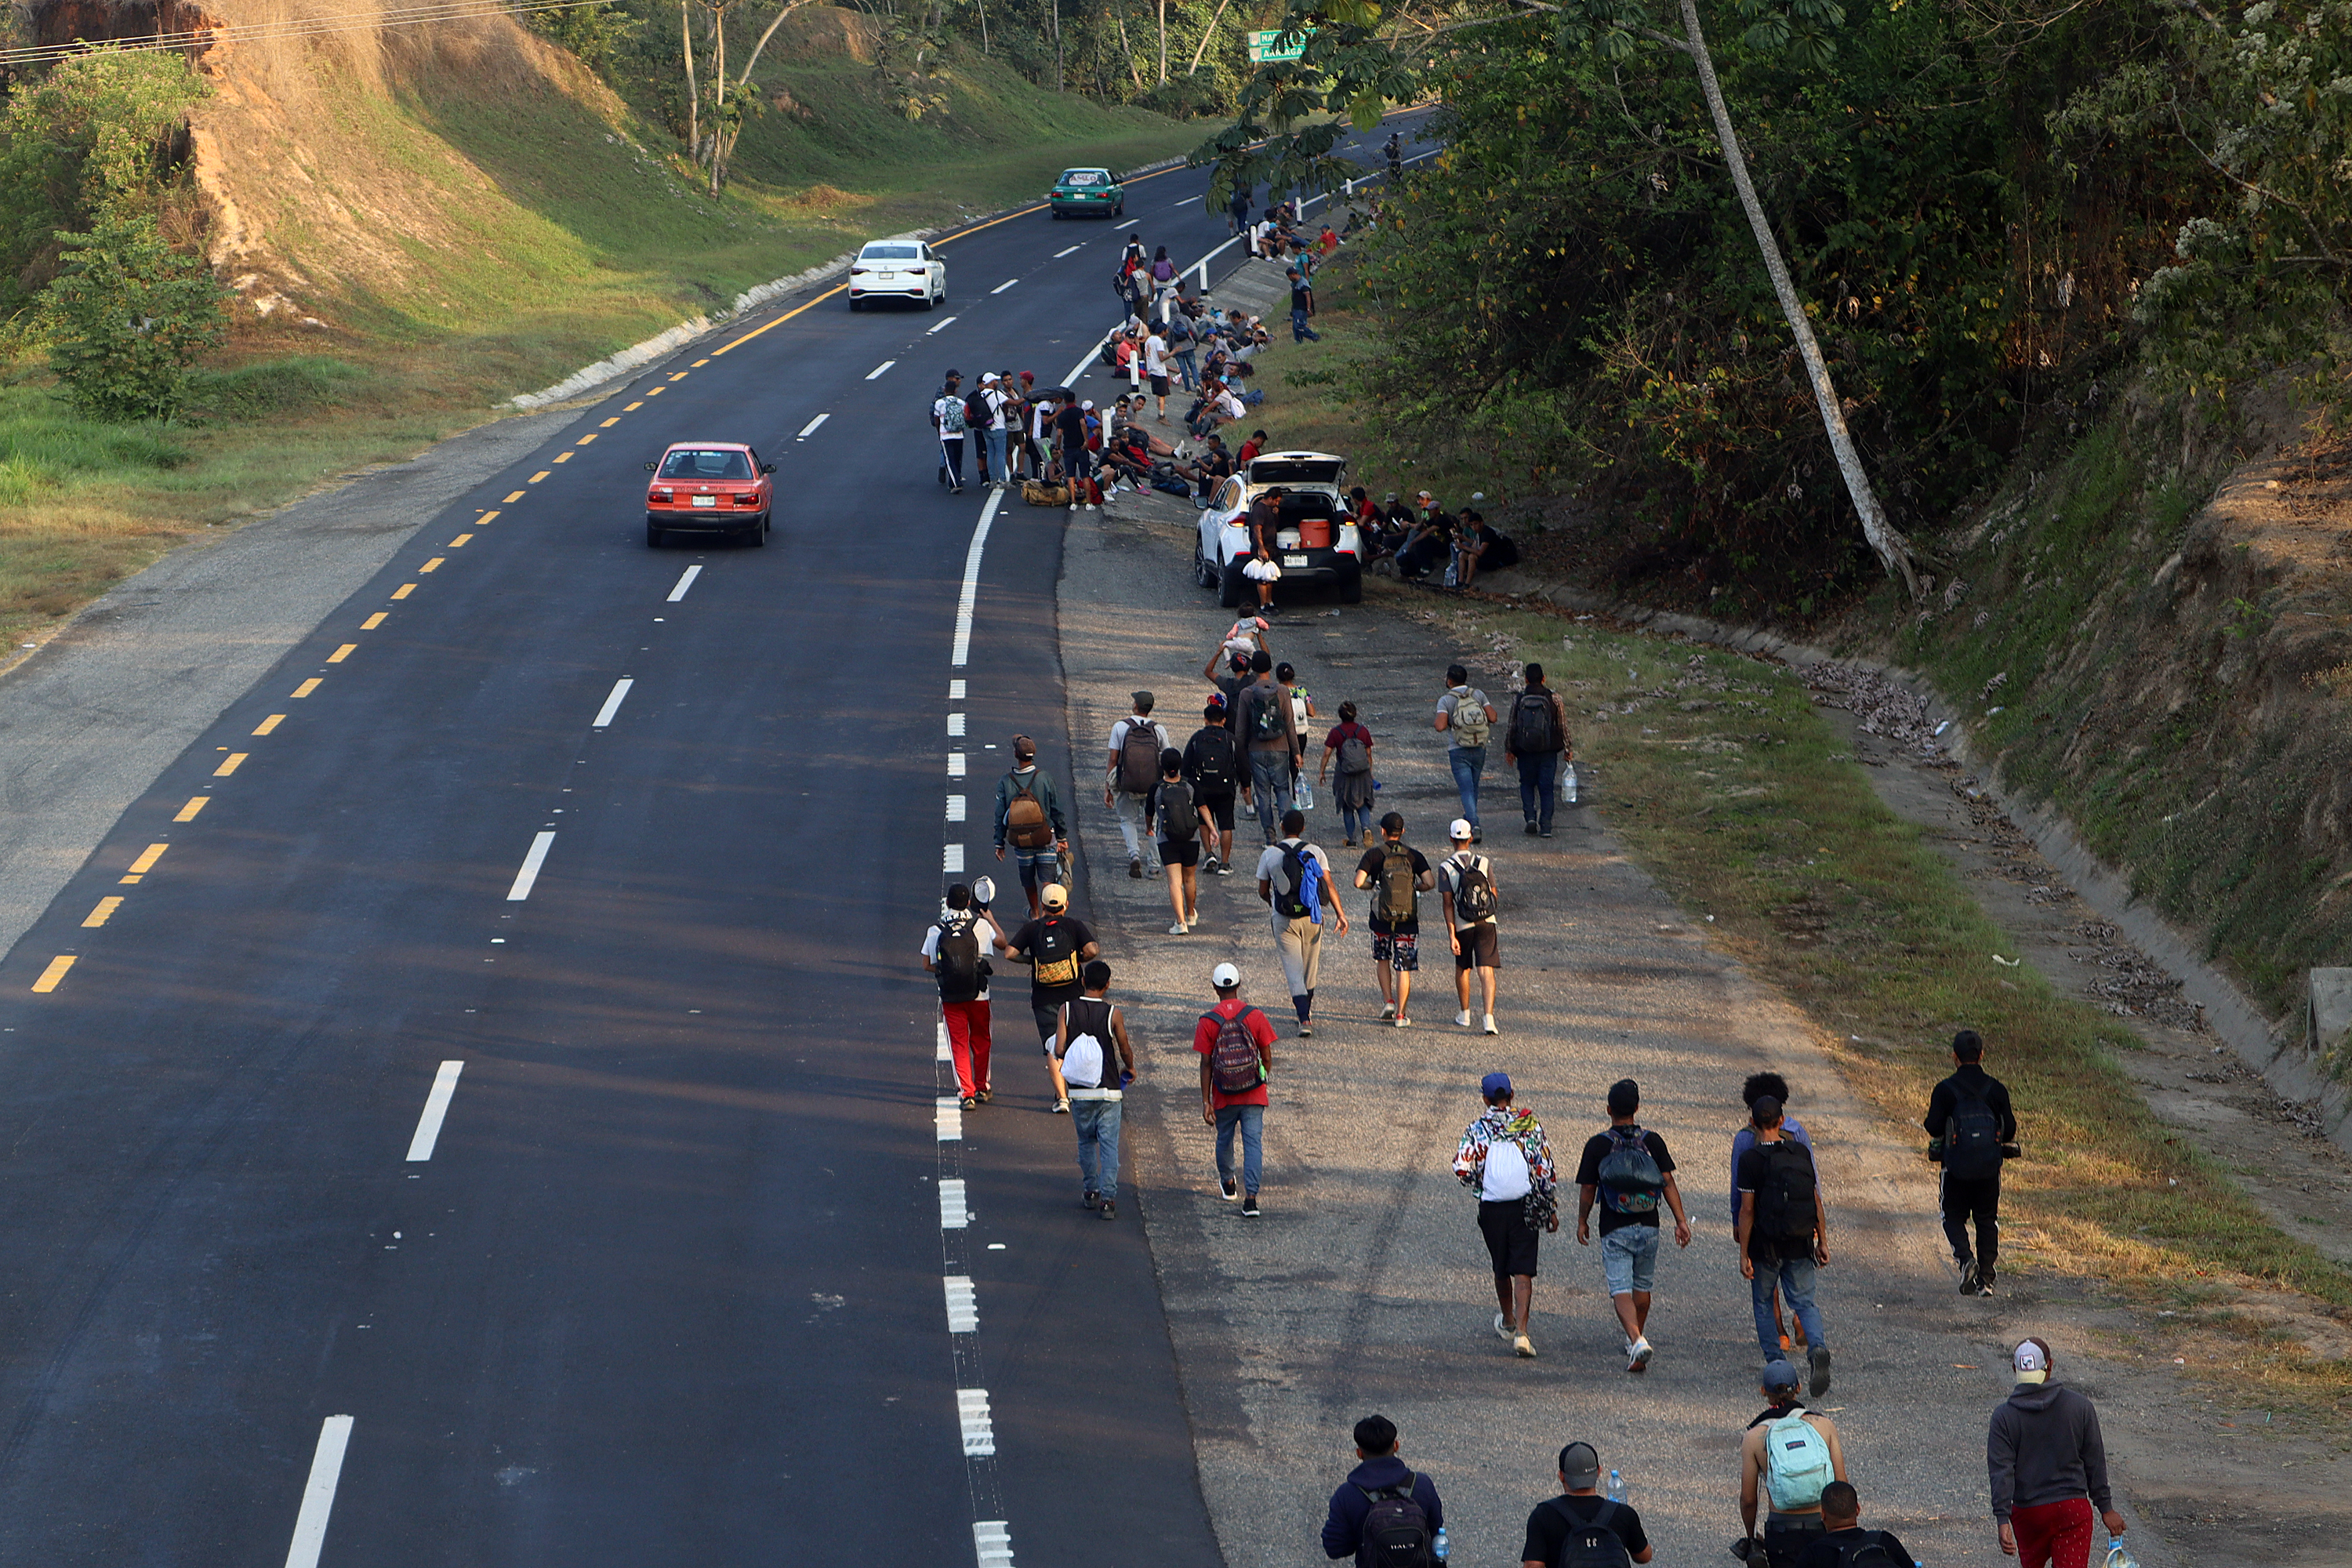 Migrantes caminan en caravana en una carretera de la ciudad de Huixtla, México. (Foto EFE: Juan Manuel Blanco)